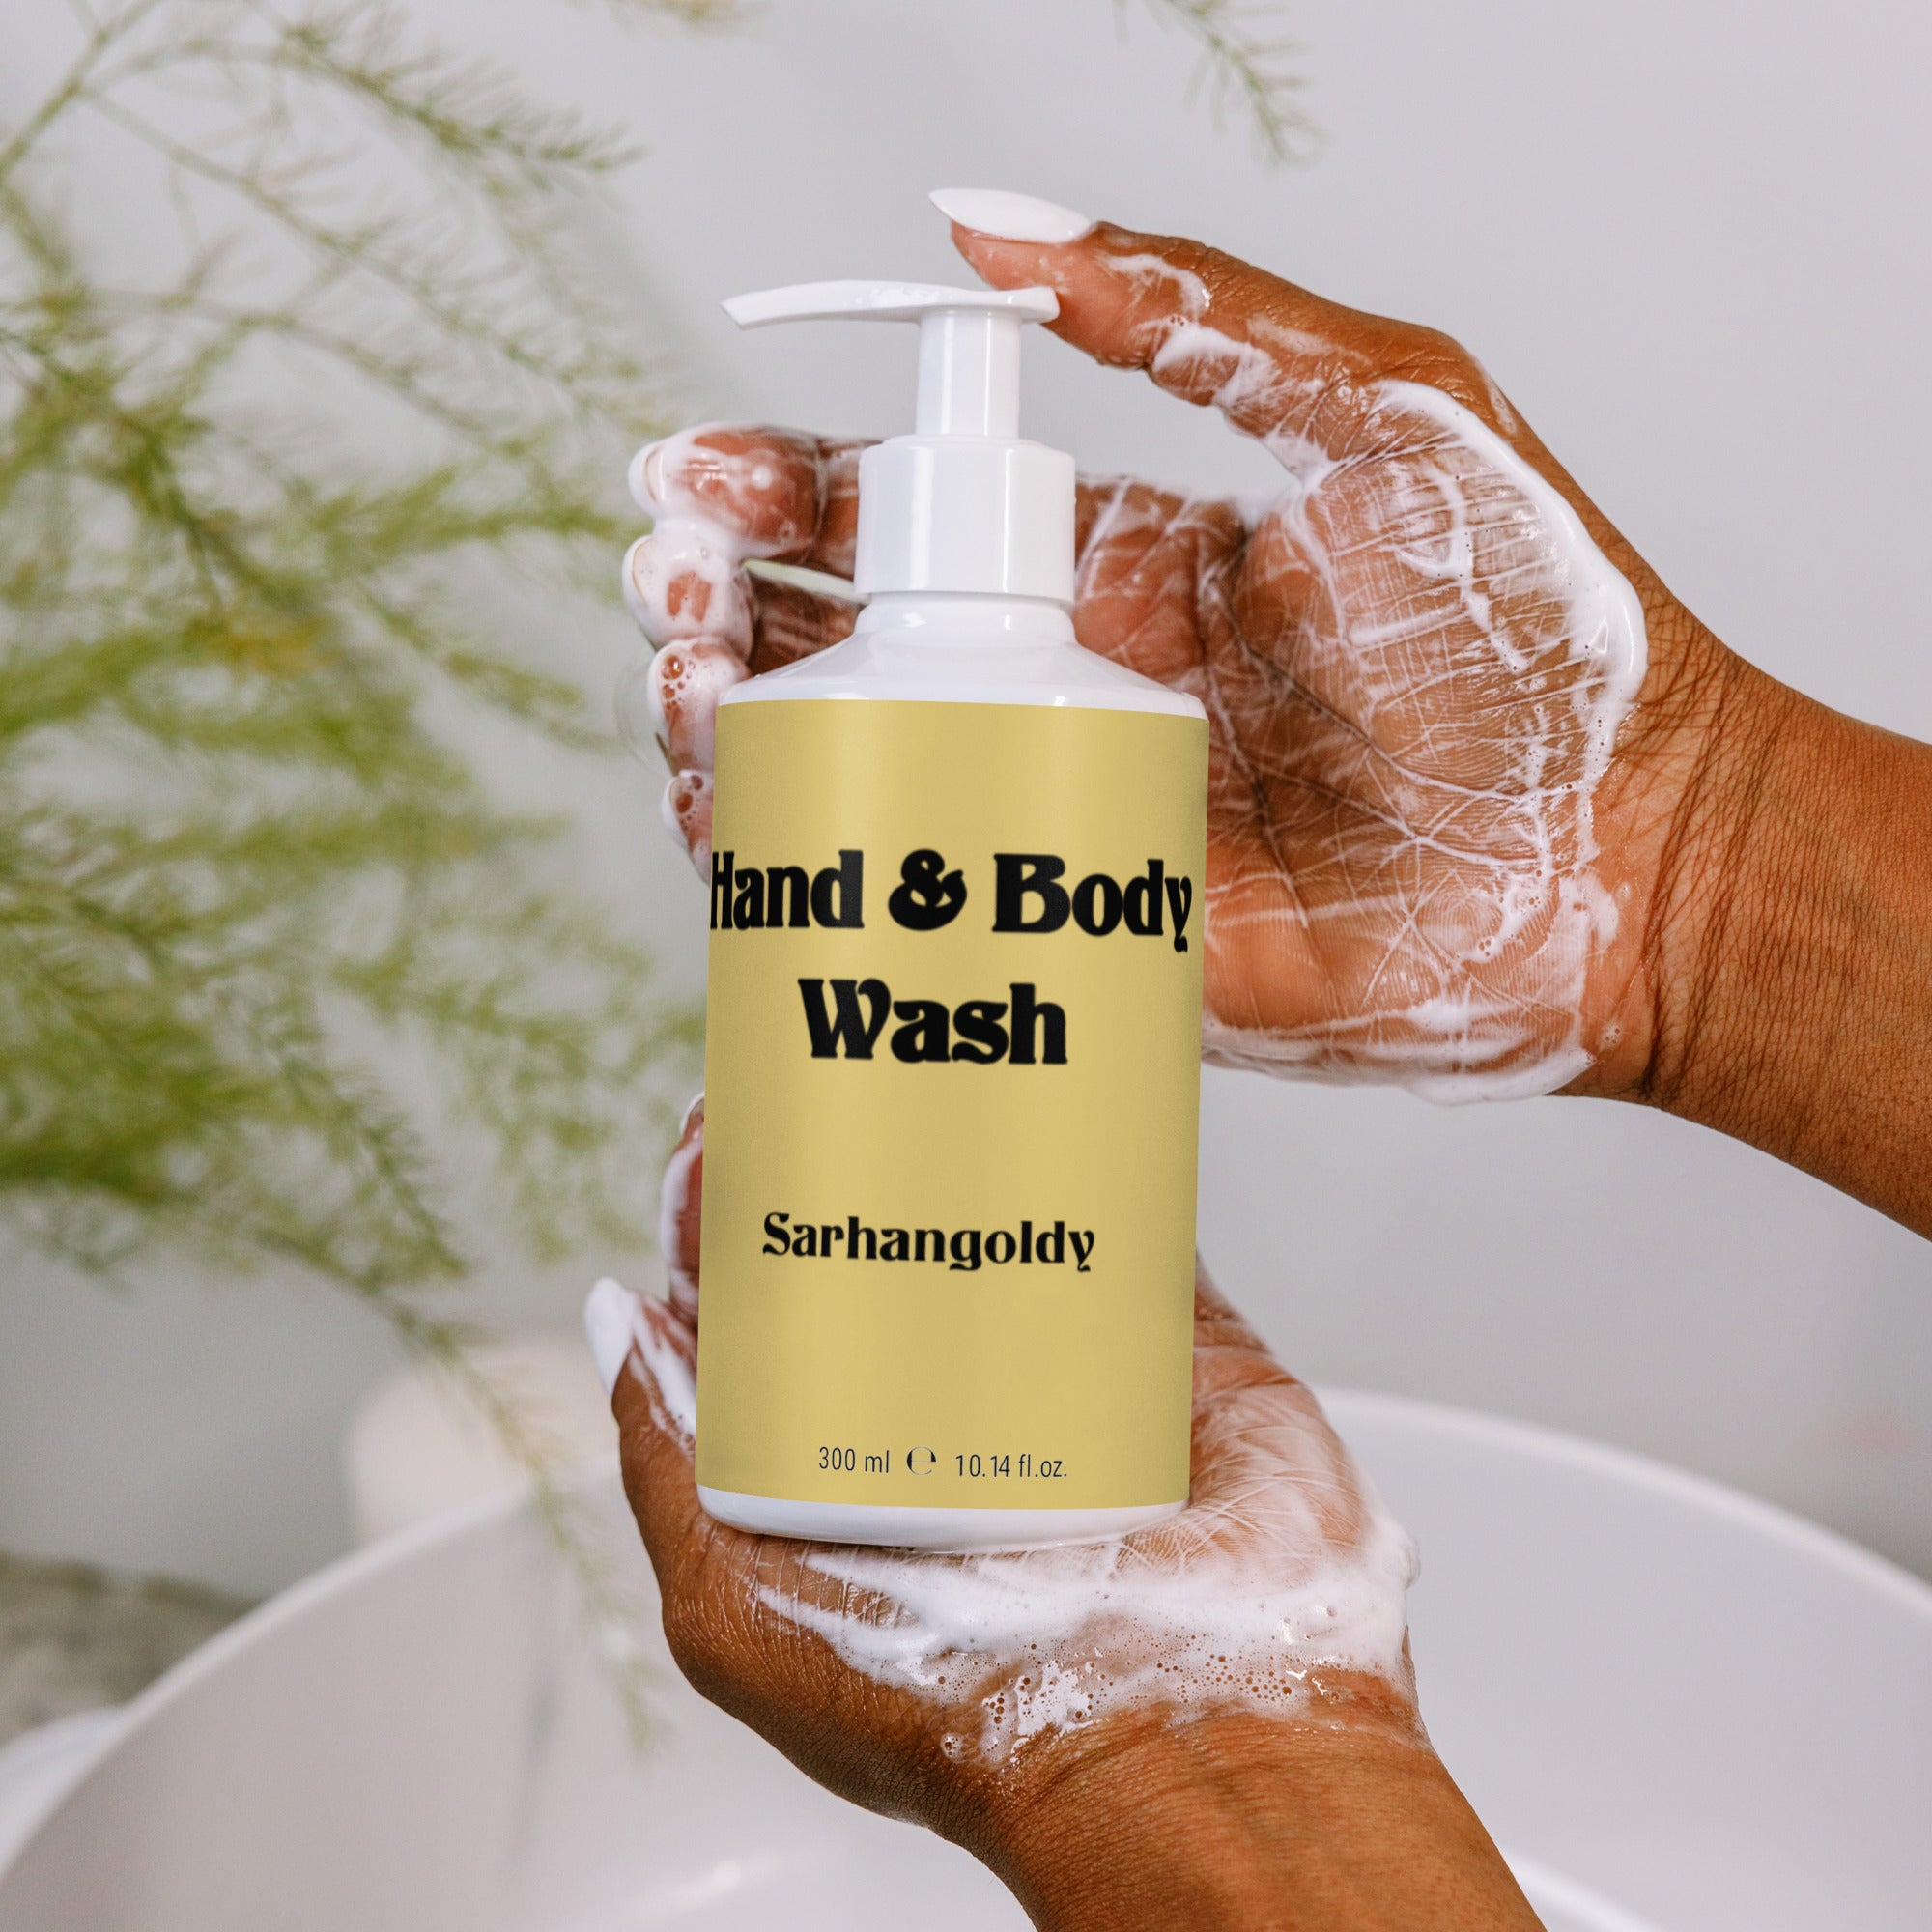 Hand & Body Wash “Sarhangoldy”